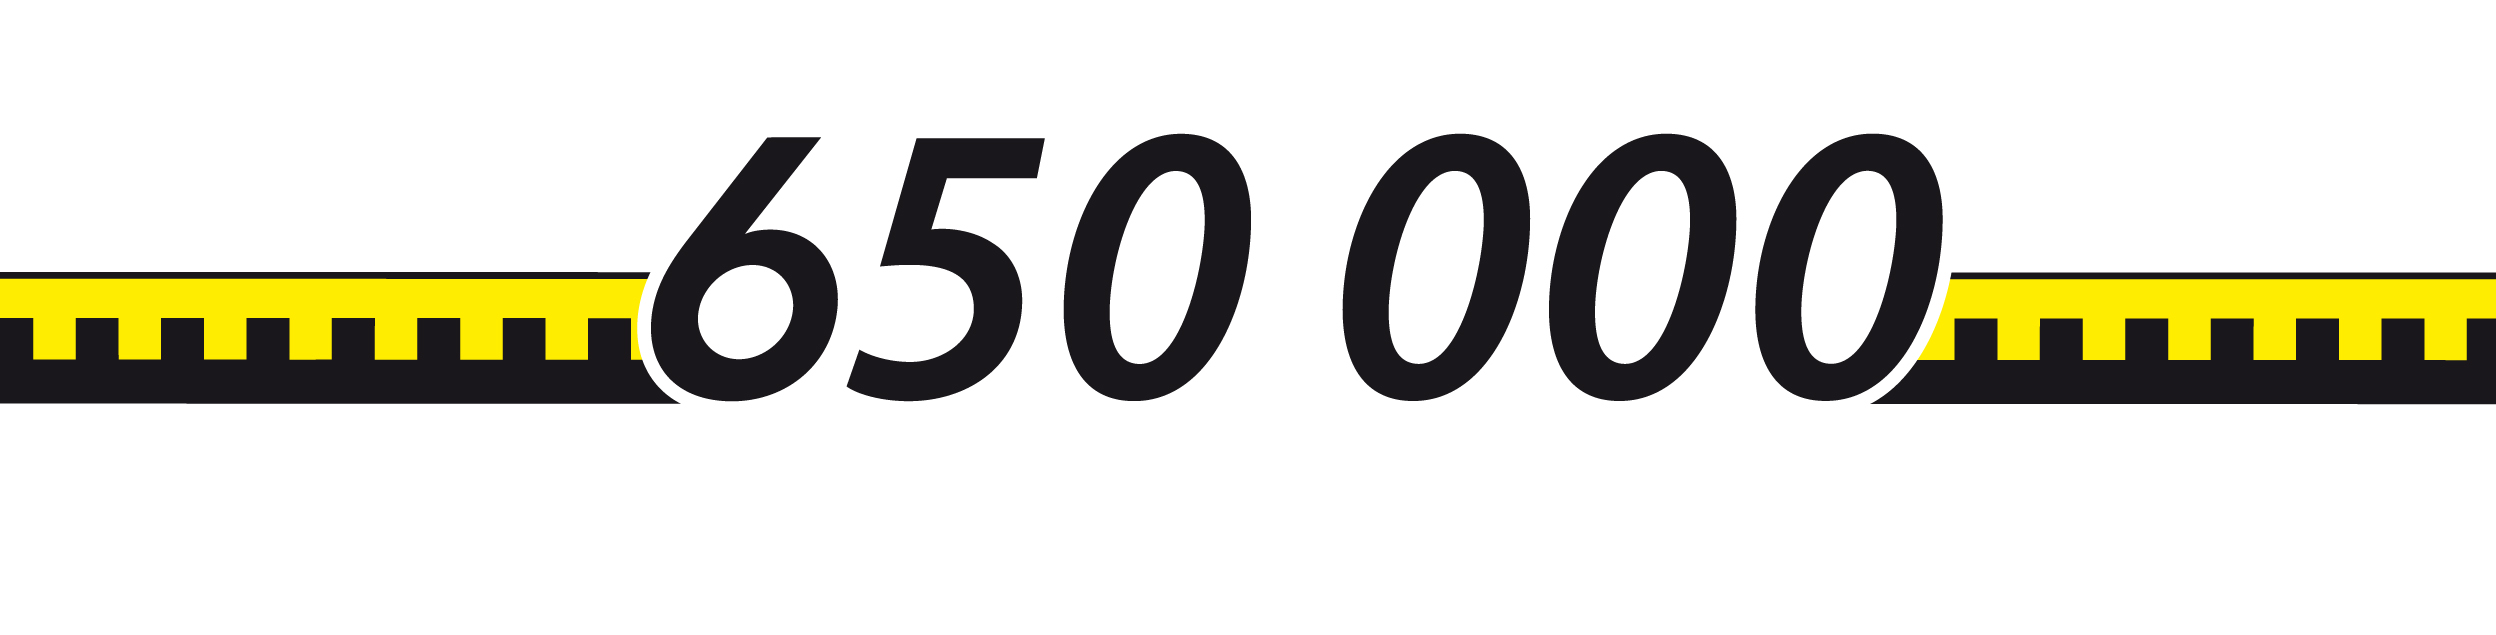 650 000